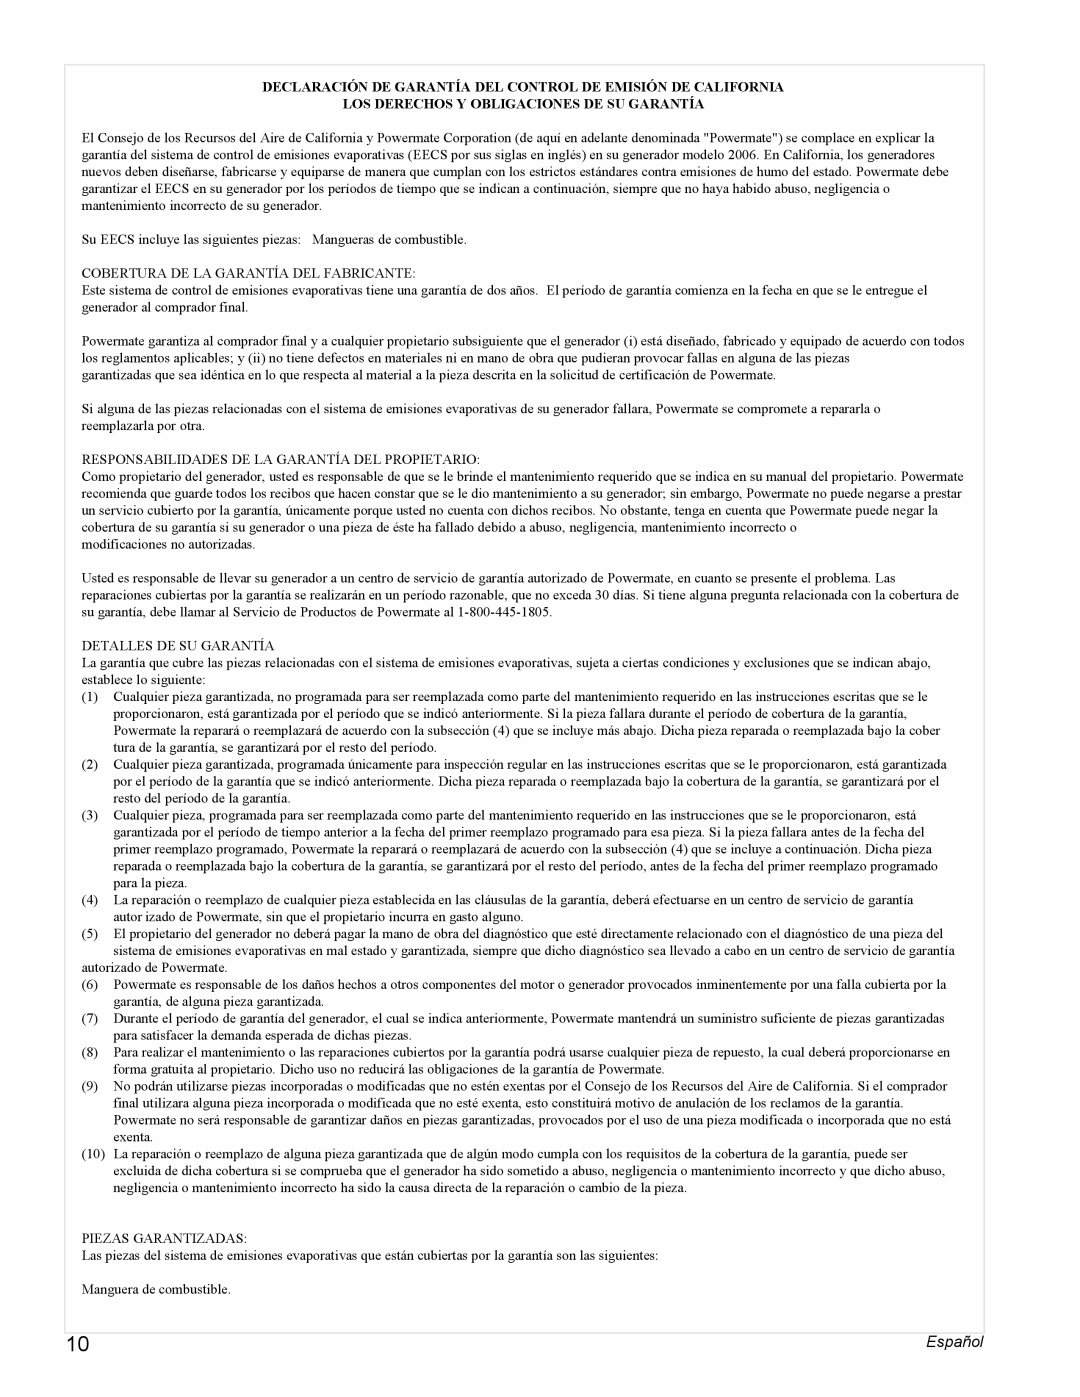 Powermate PMC435250 manual Los Derechos Y Obligaciones De Su Garantía, Español 